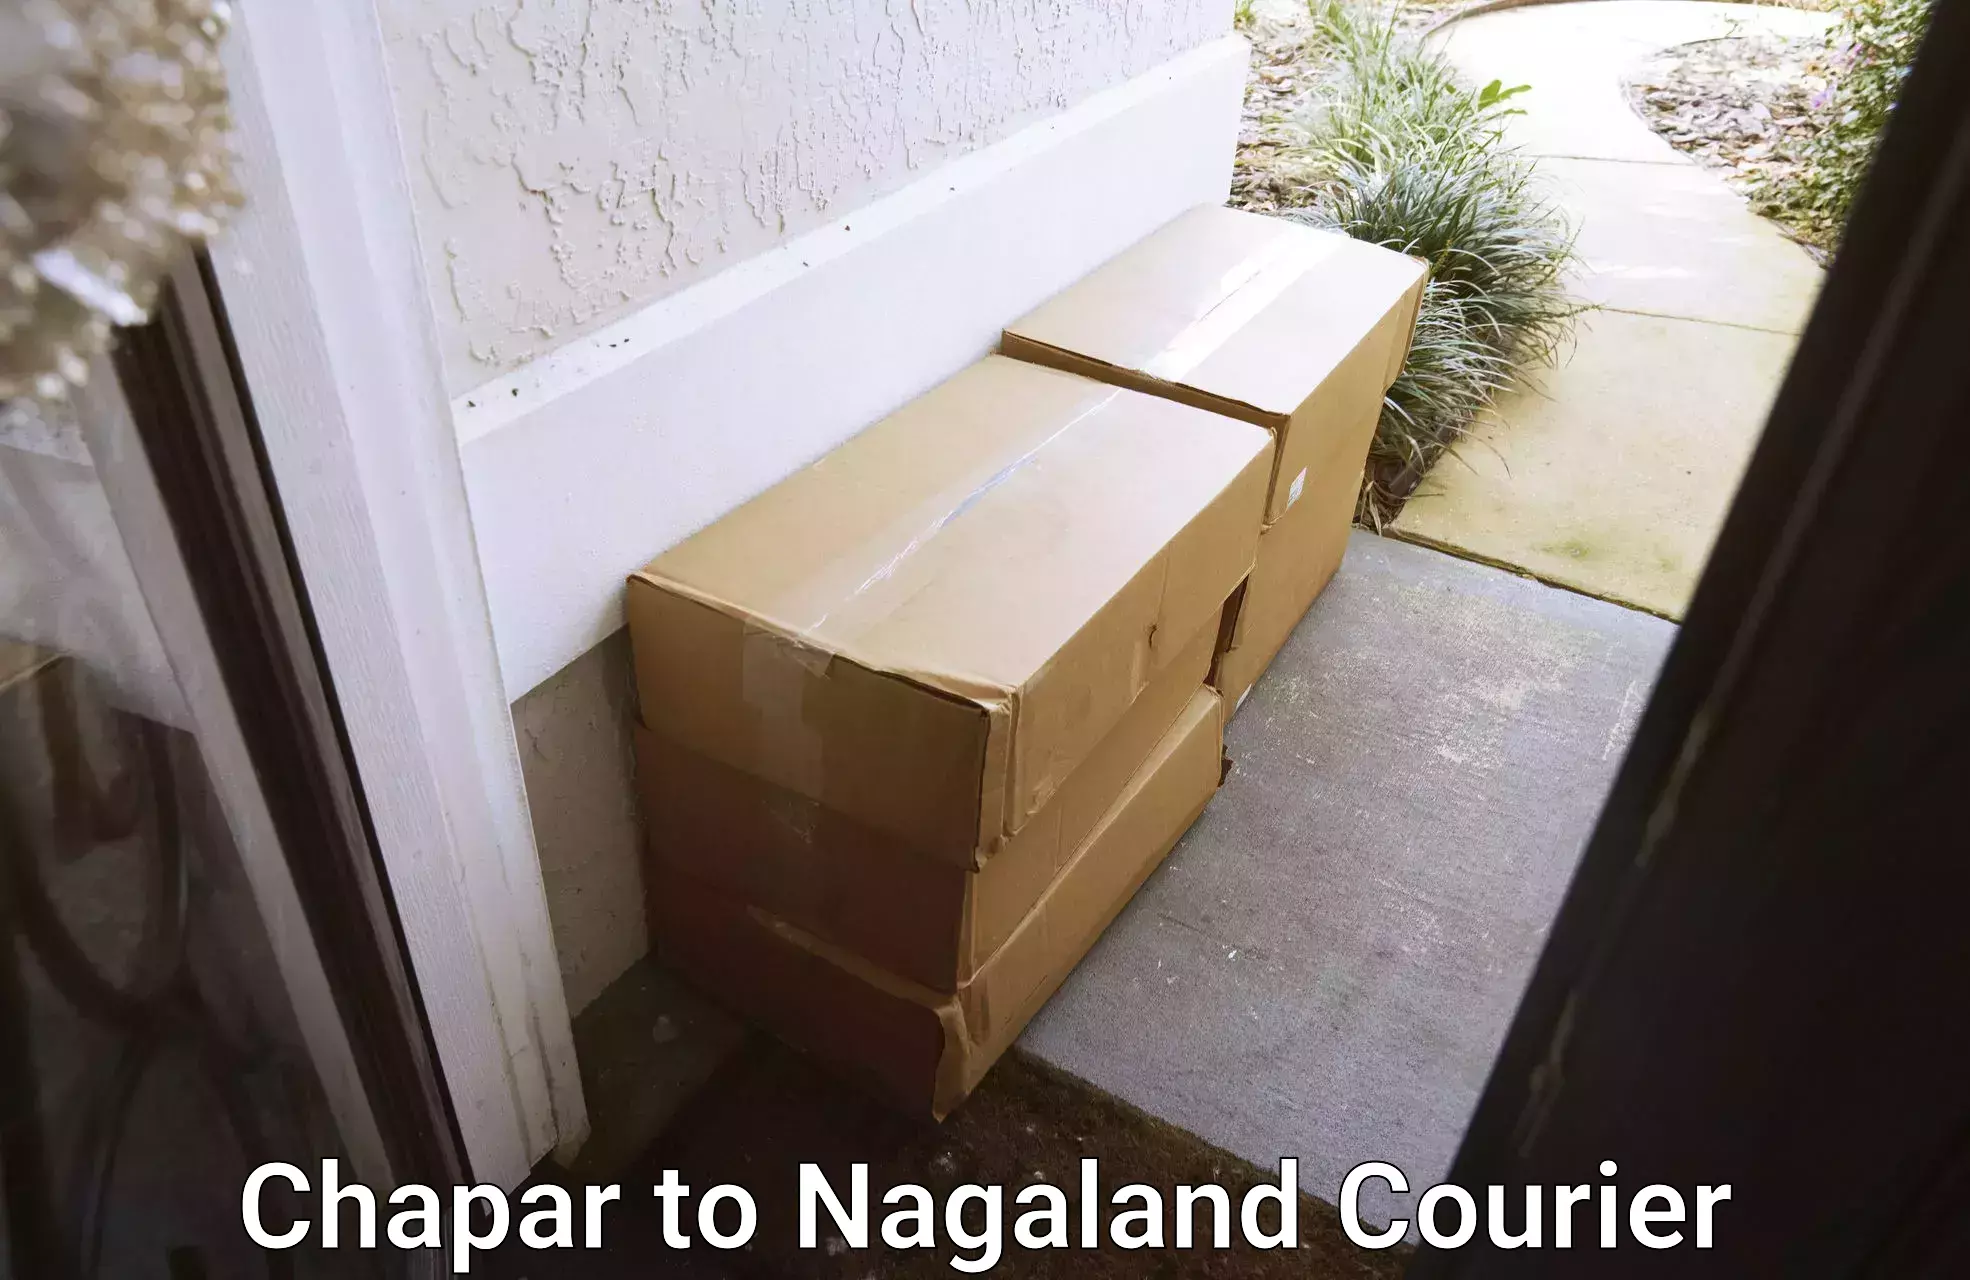 International parcel service Chapar to Kiphire